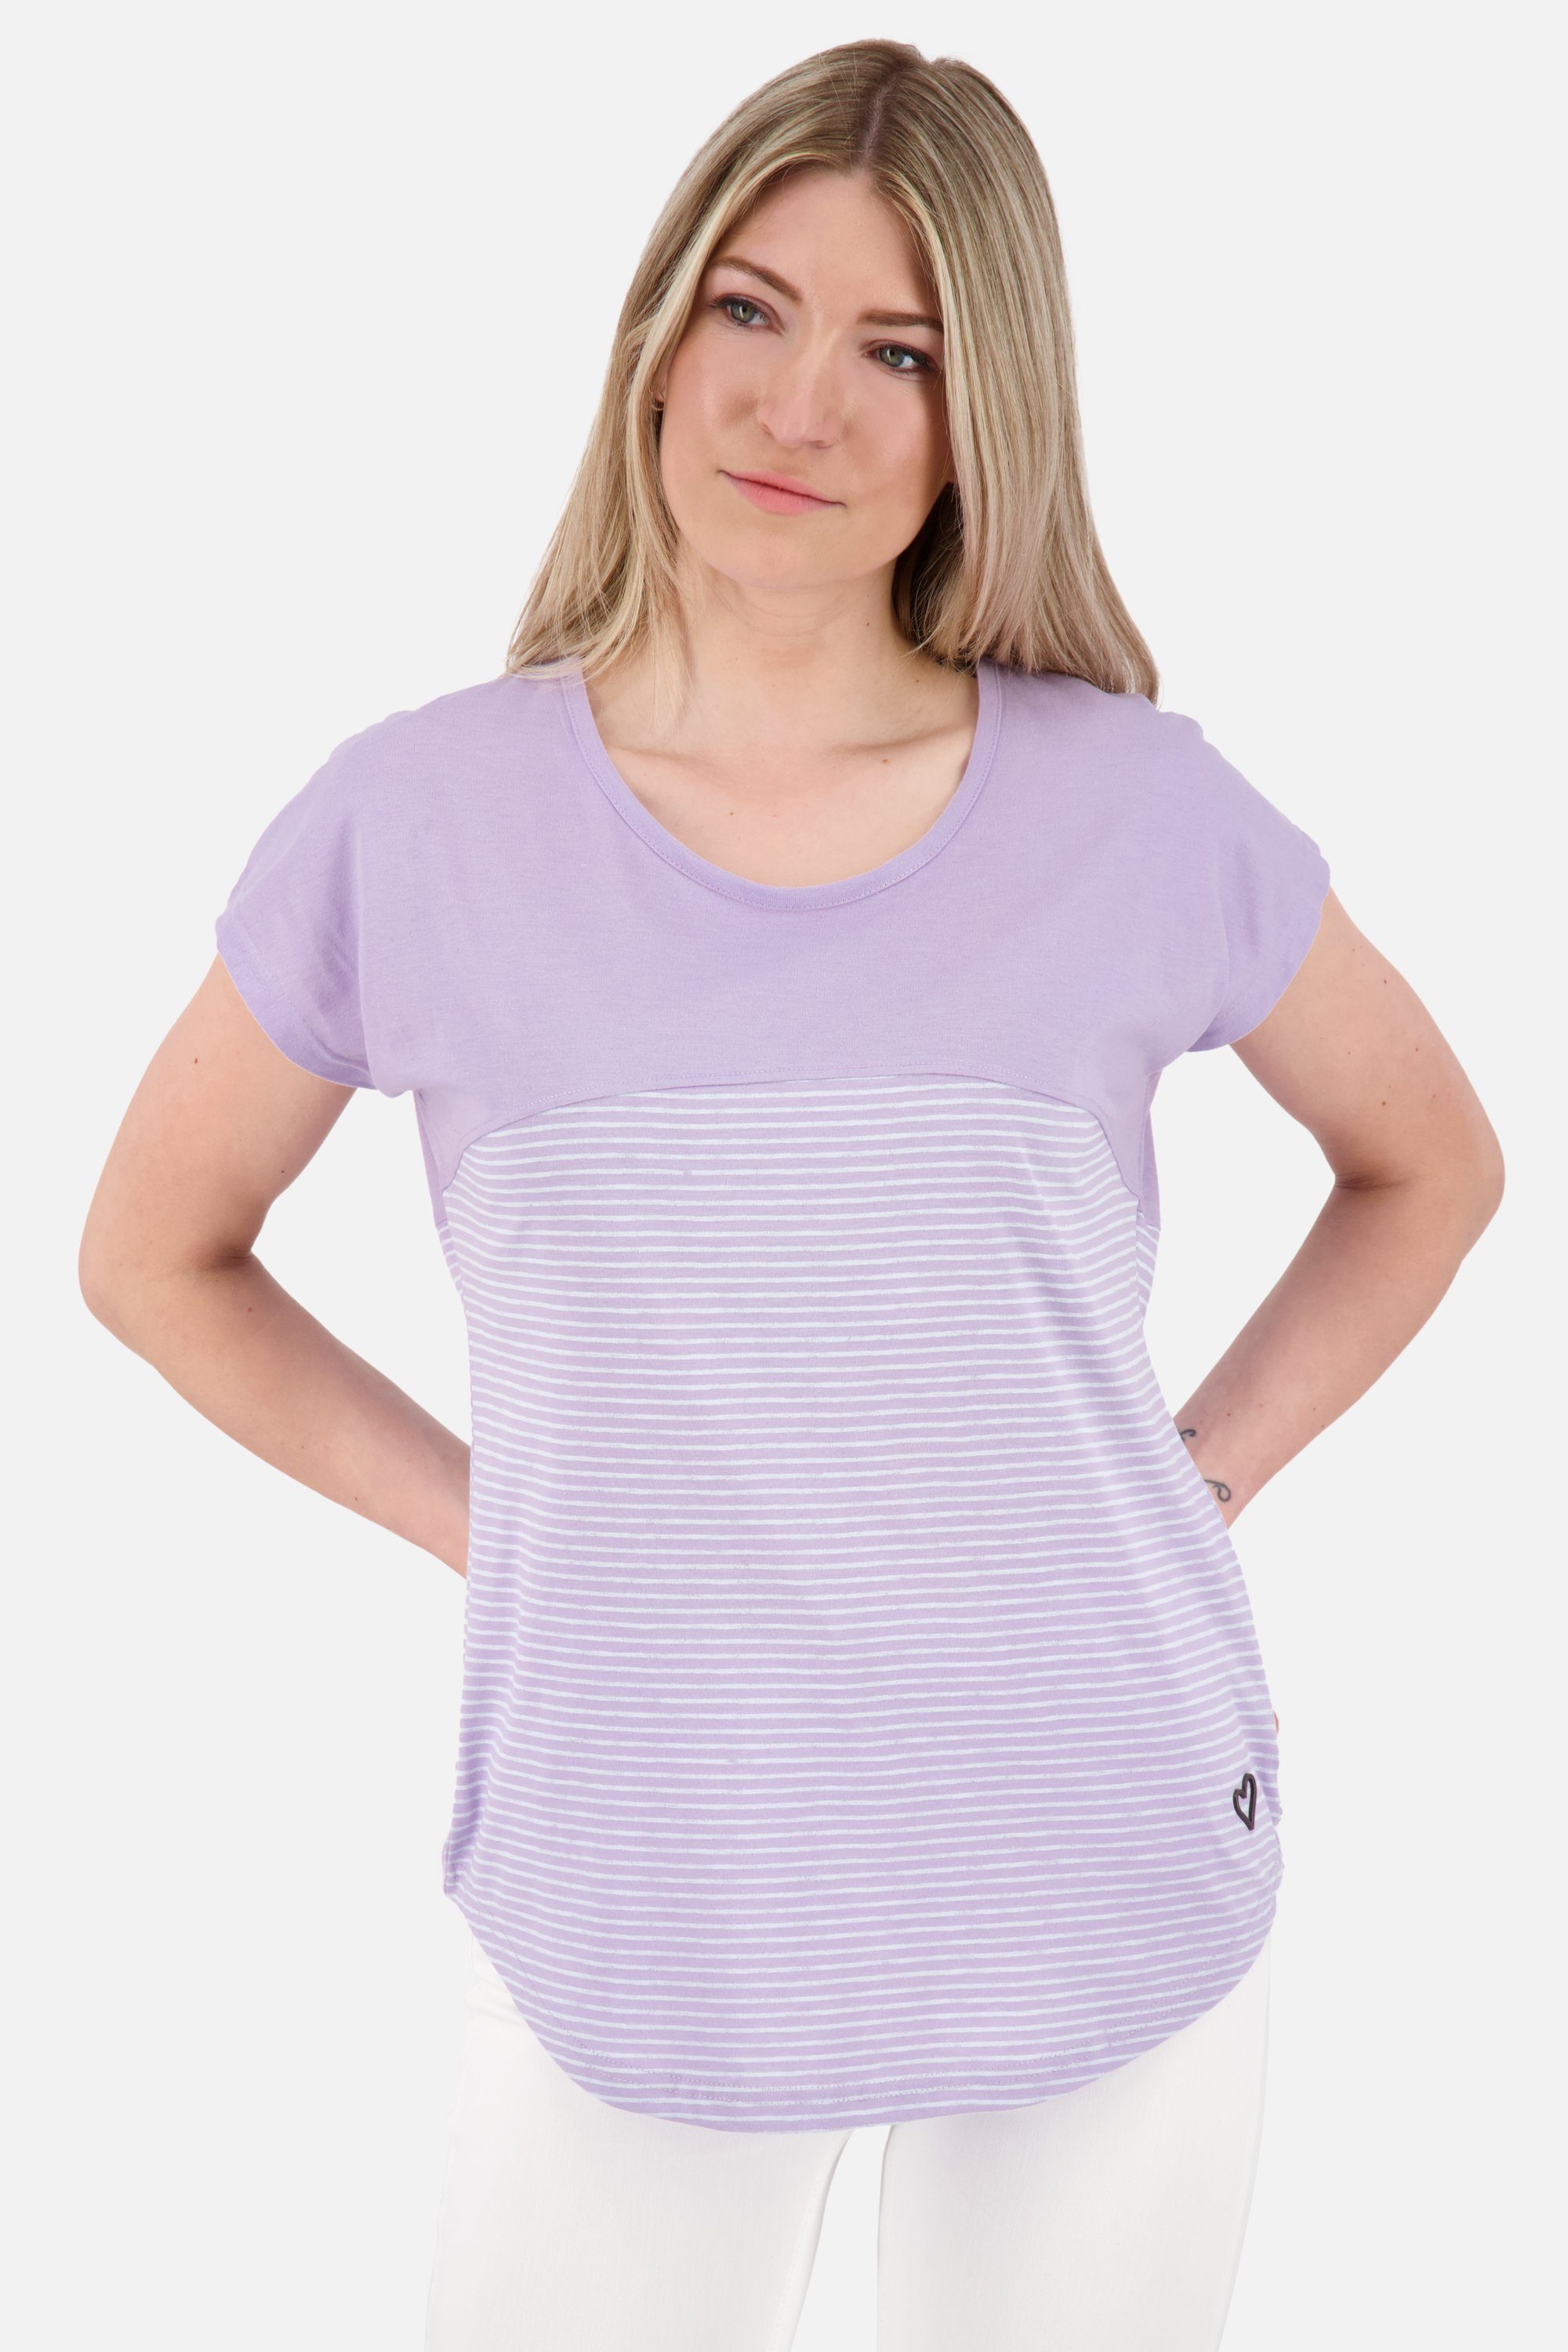 [Inländisches reguläres Produkt] Alife & Kickin Rundhalsshirt Z lavender digital ClarettaAK Damen Kurzarmshirt, Shirt Shirt